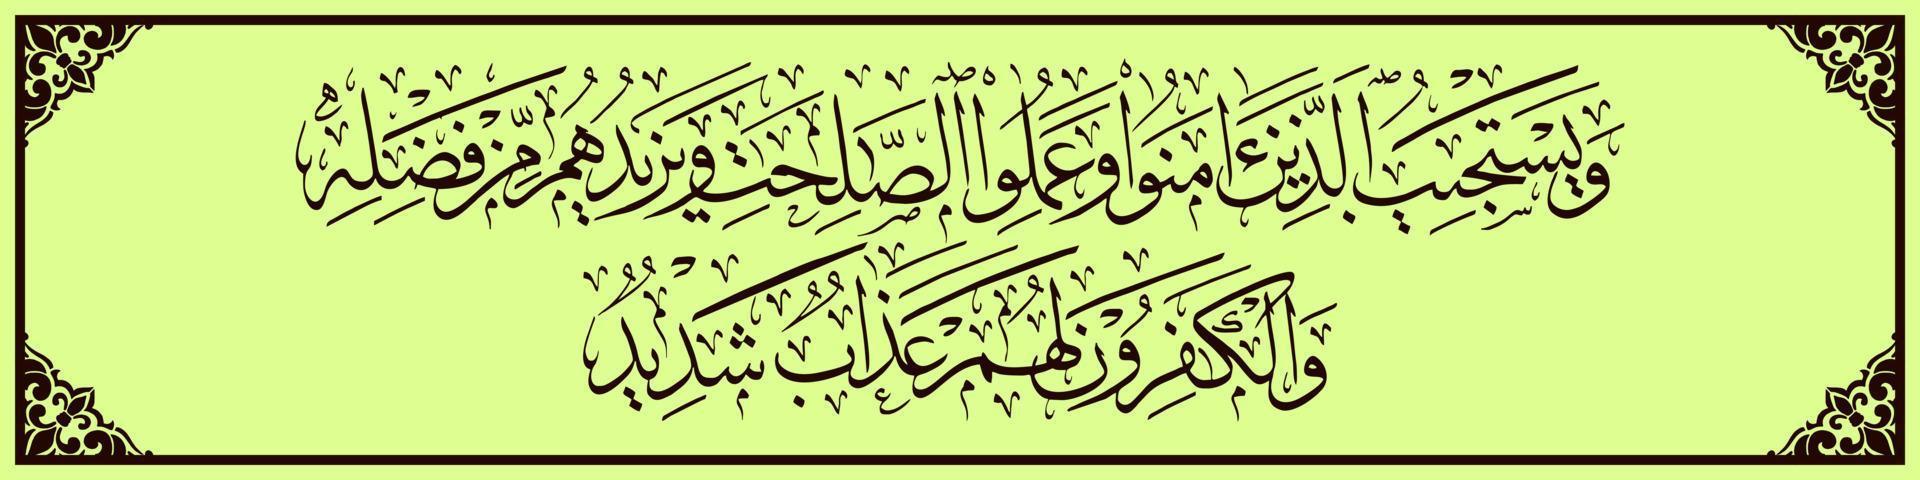 caligrafia árabe, al qur'an surah ash-shura 26, tradução e ele permite as orações daqueles que acreditam e fazem o bem e aumentam sua recompensa de sua graça. vetor